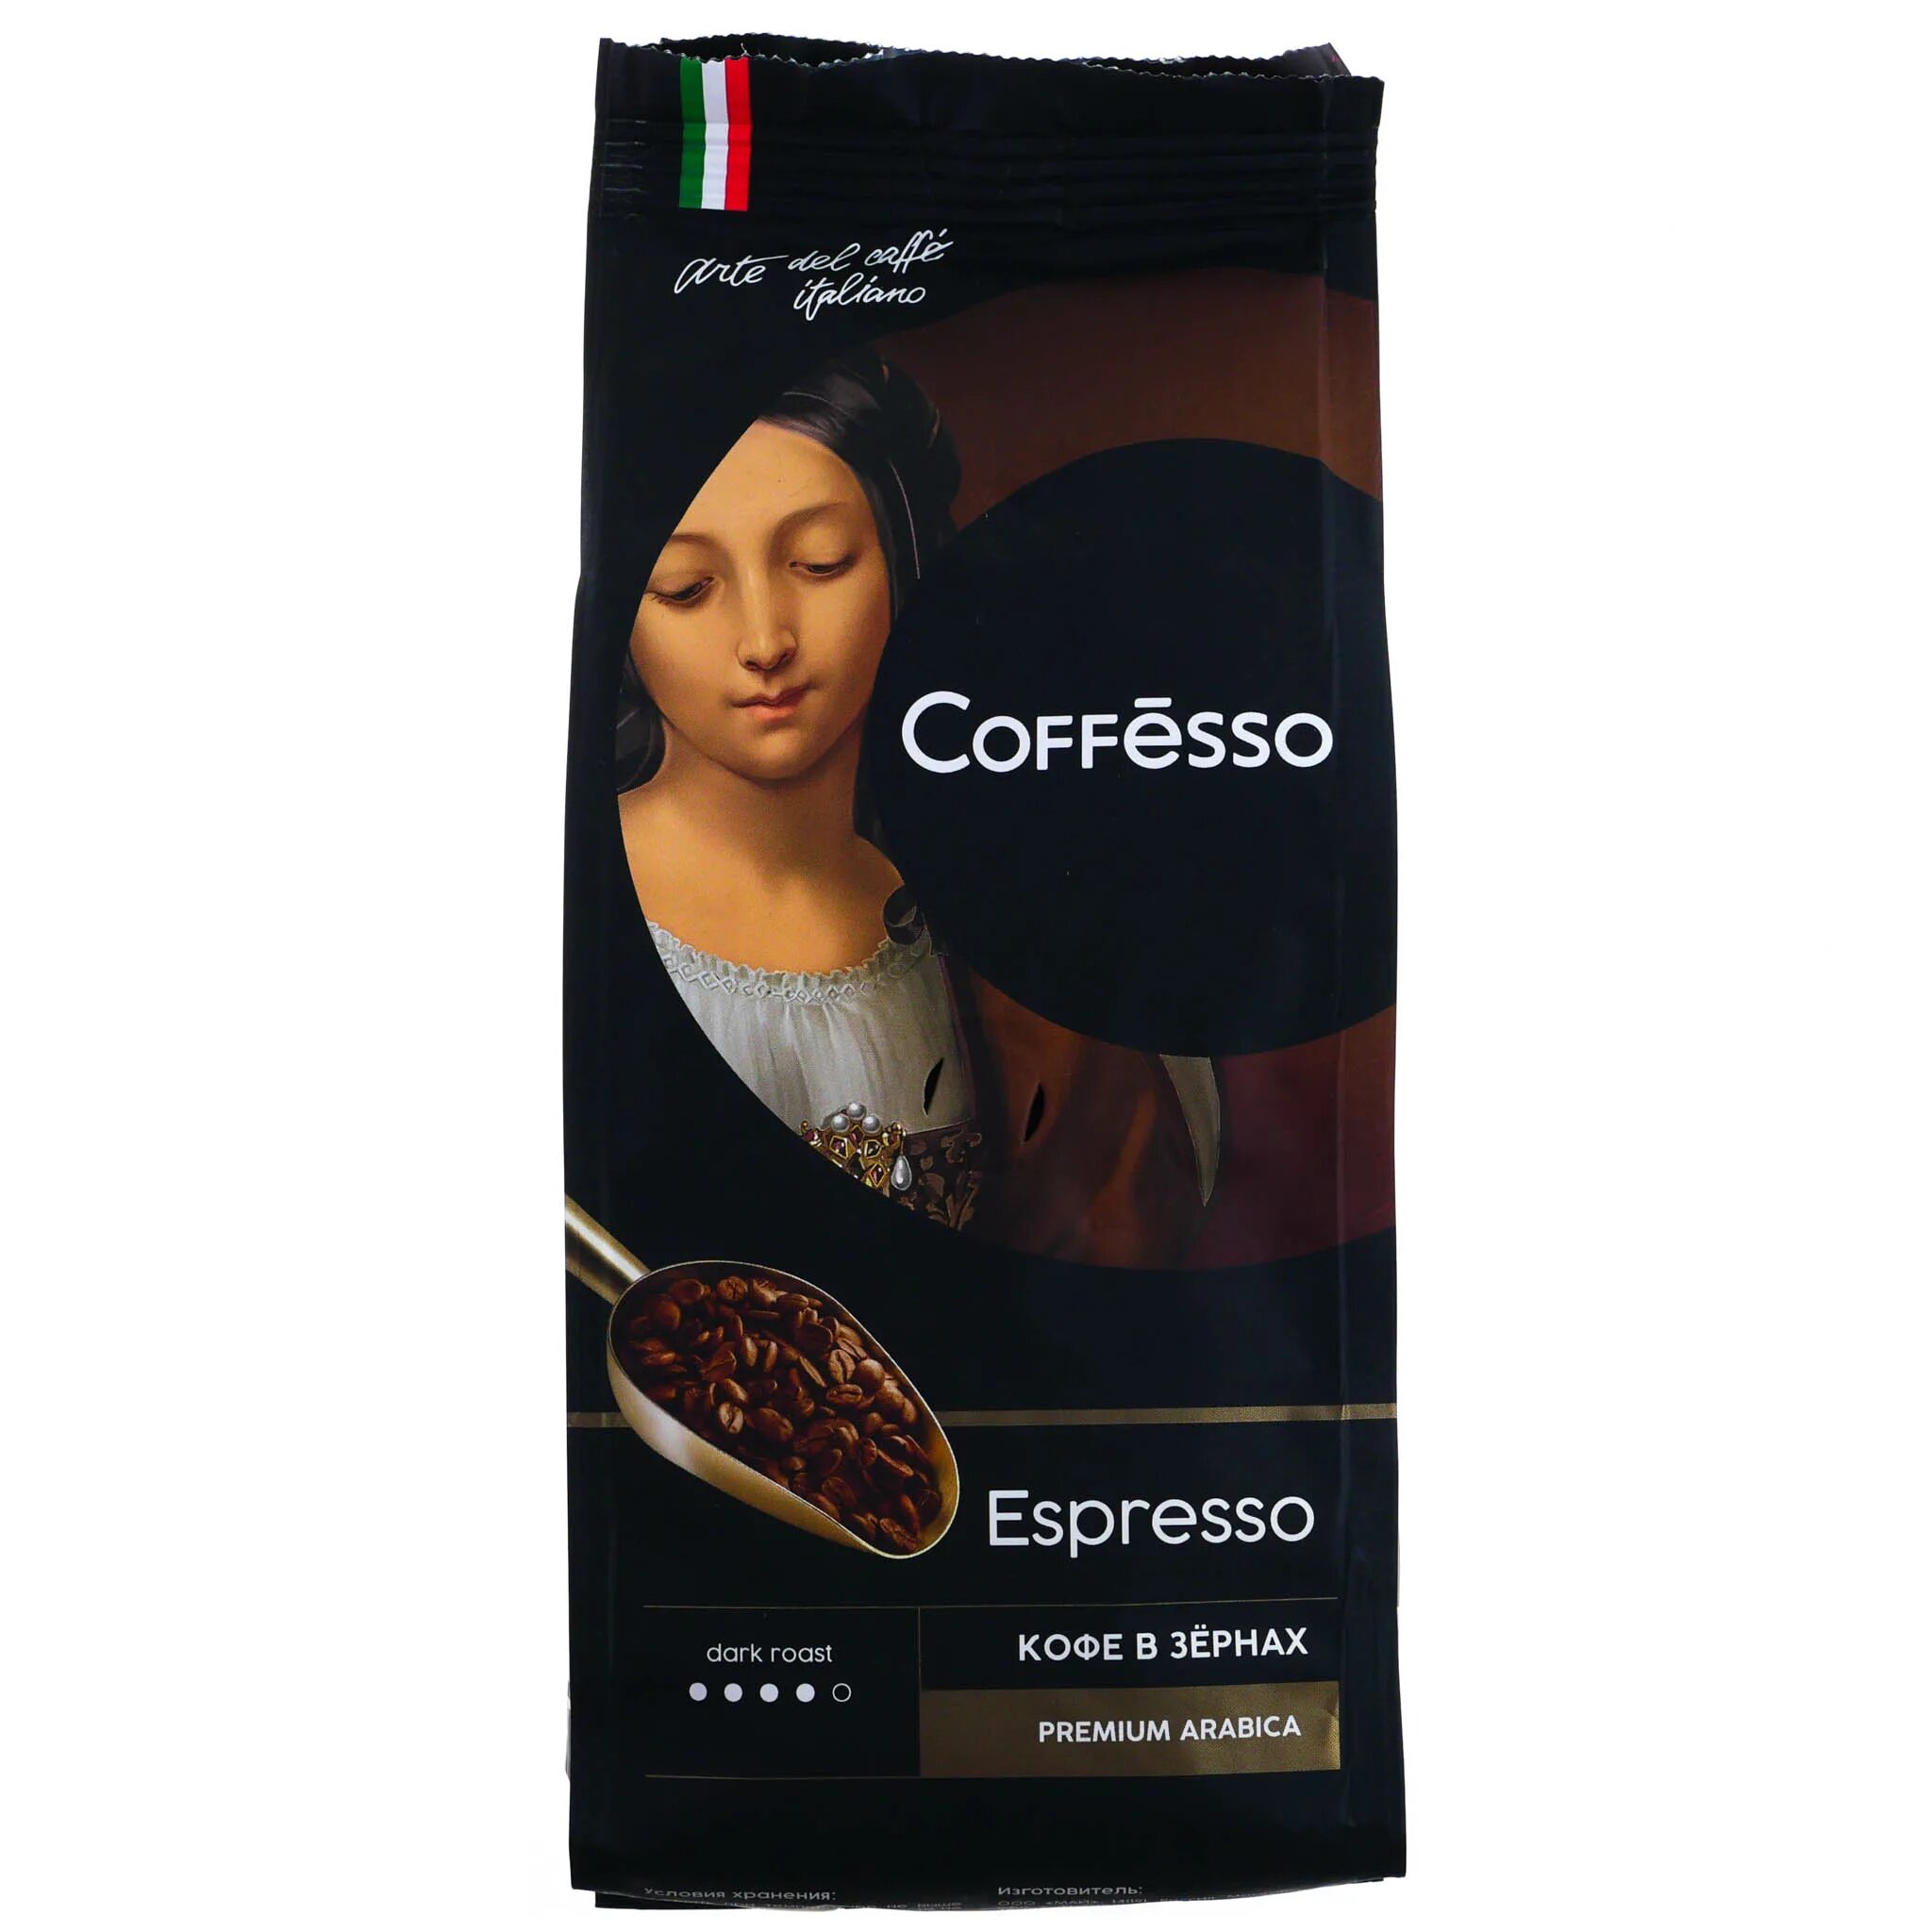 Кофе зерновой Coffesso. Кофе зерно Coffesso Espresso 250г. Кофе в зернах с девушкой на упаковке. Кофе в зернах с женщиной на упаковке.